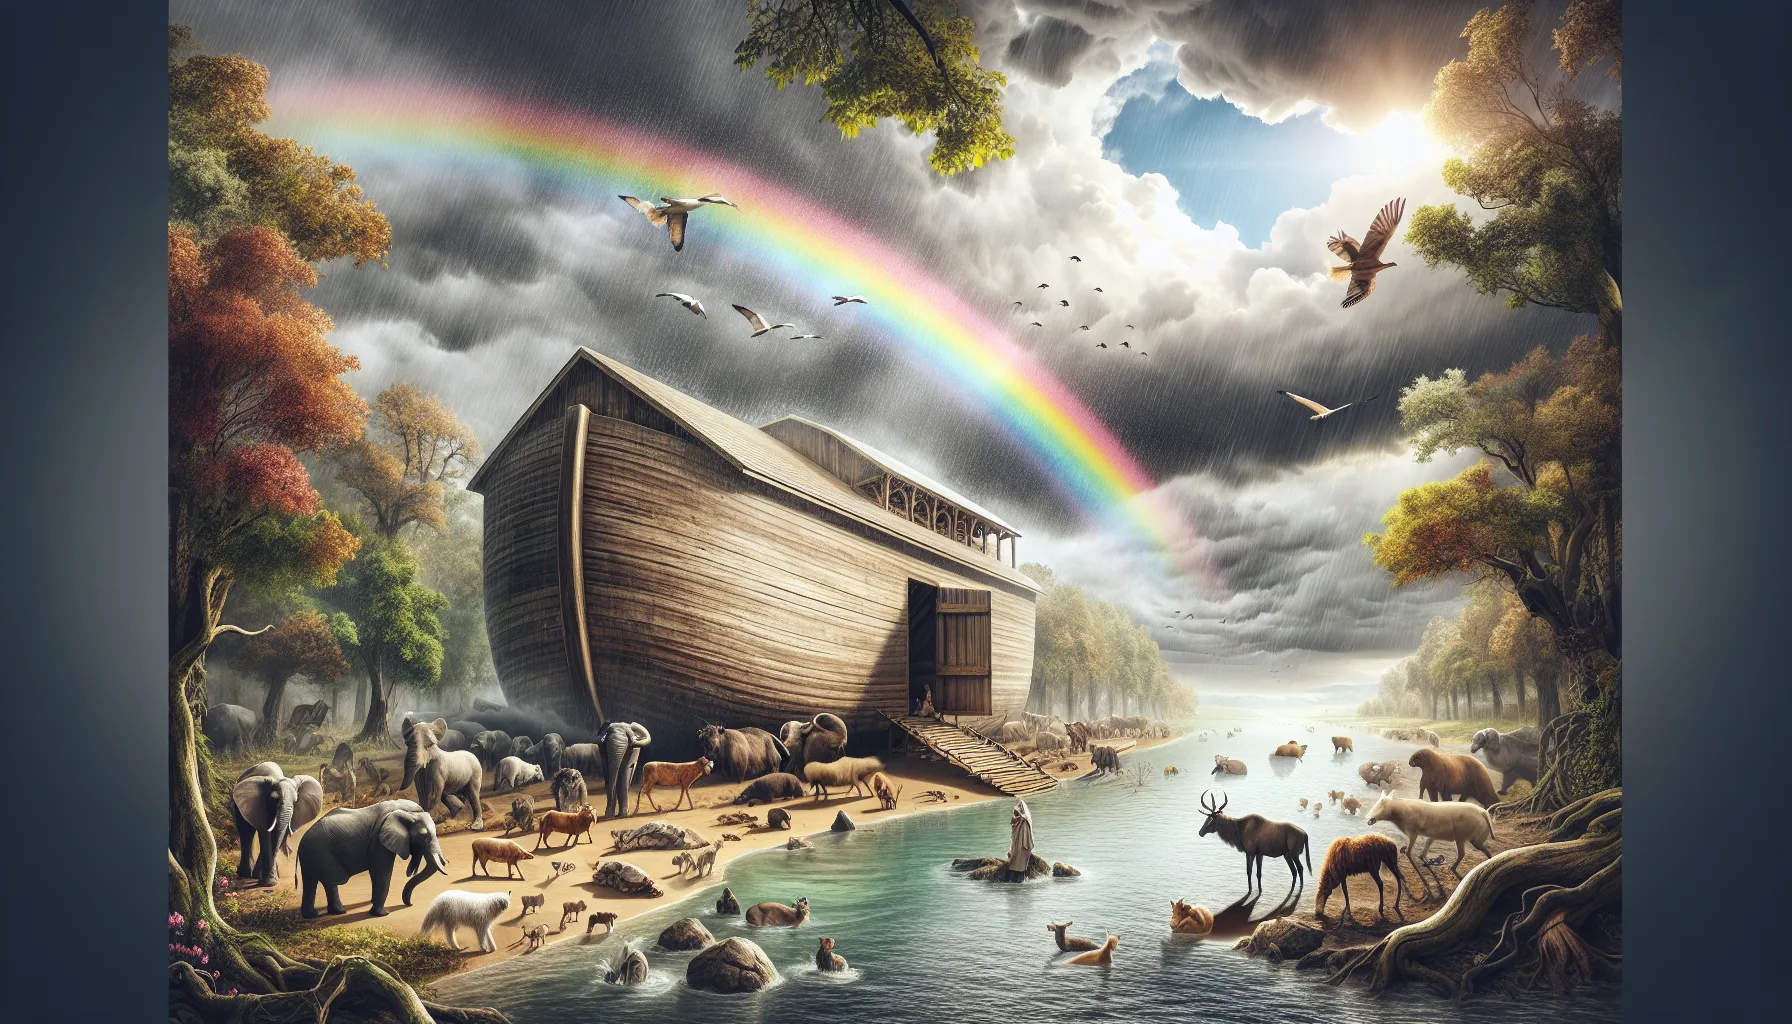 Imagen que representa el tema del artículo sobre el significado del Pacto de Noé en la Biblia.